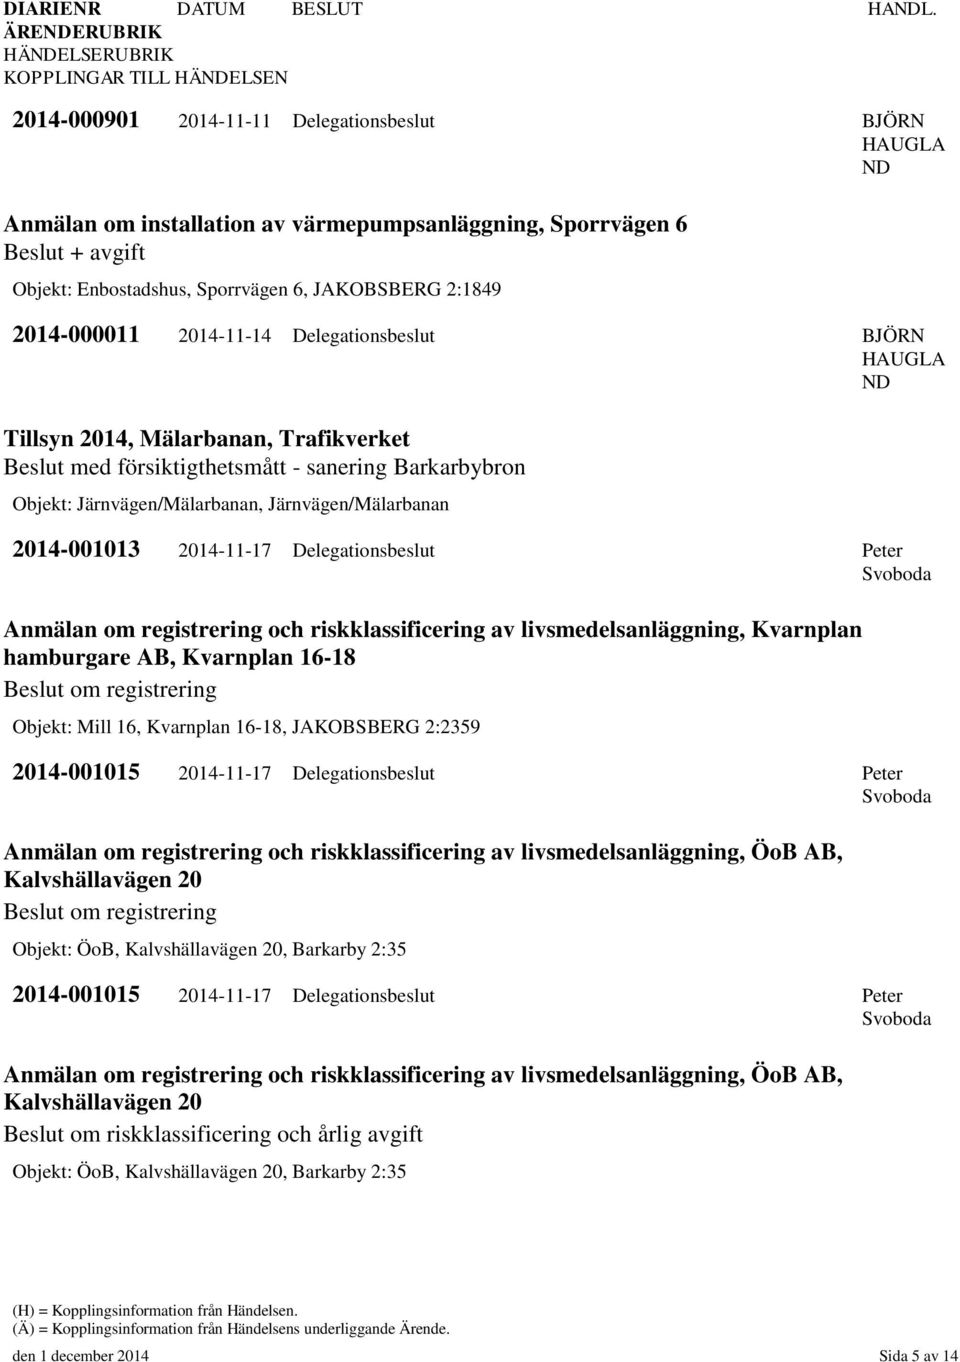 2014-11-17 Delegationsbeslut Peter Svoboda Anmälan om registrering och riskklassificering av livsmedelsanläggning, Kvarnplan hamburgare AB, Kvarnplan 16-18 Beslut om registrering Objekt: Mill 16,